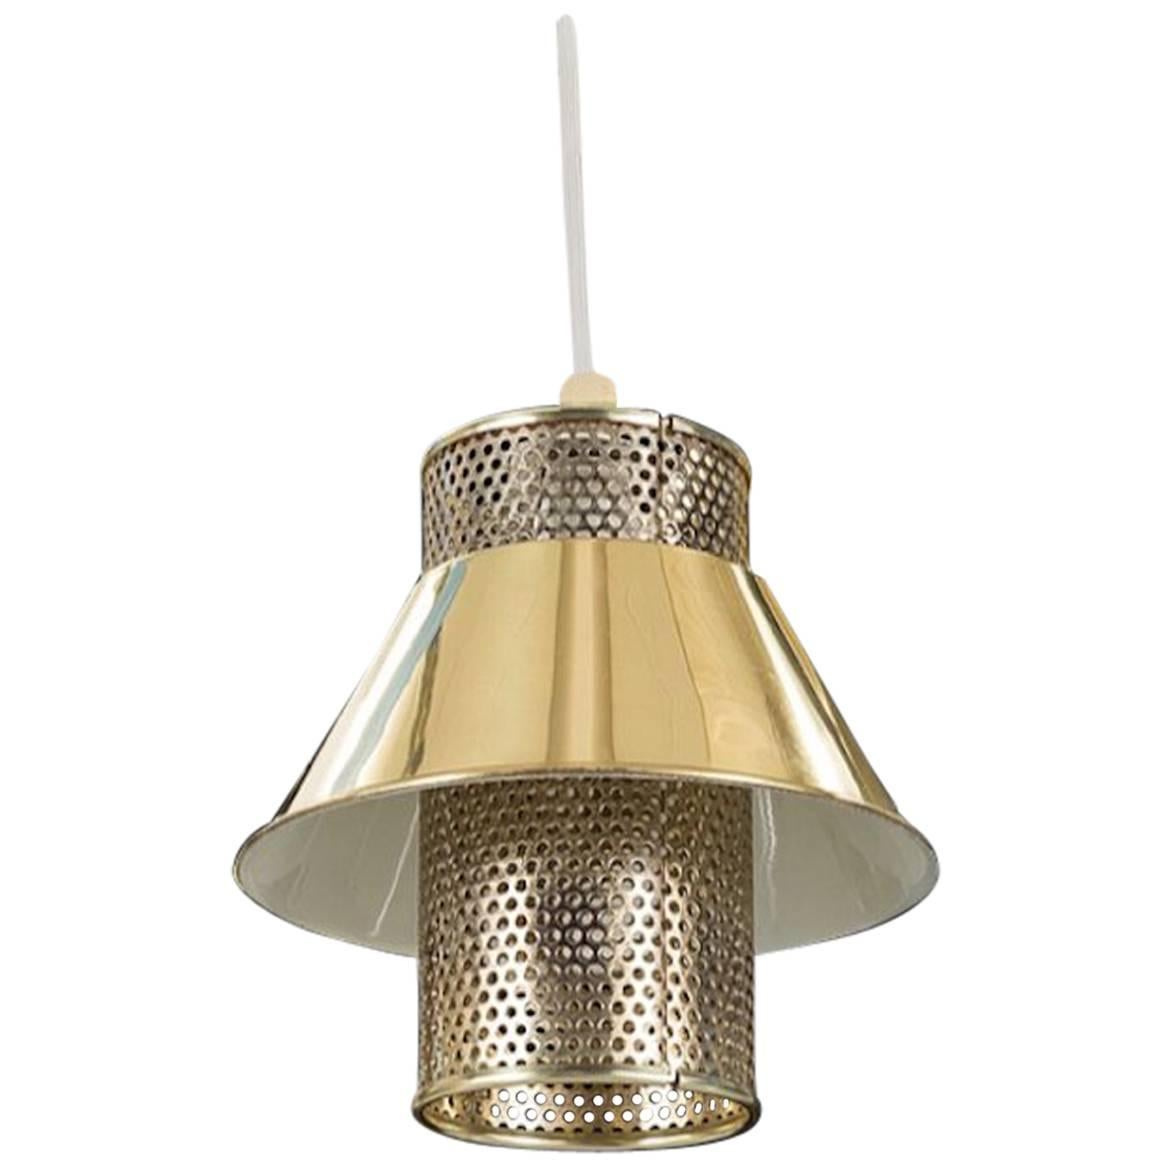 Brass Ceiling Lamp Hans Agne Jakobsson, T766, 1950